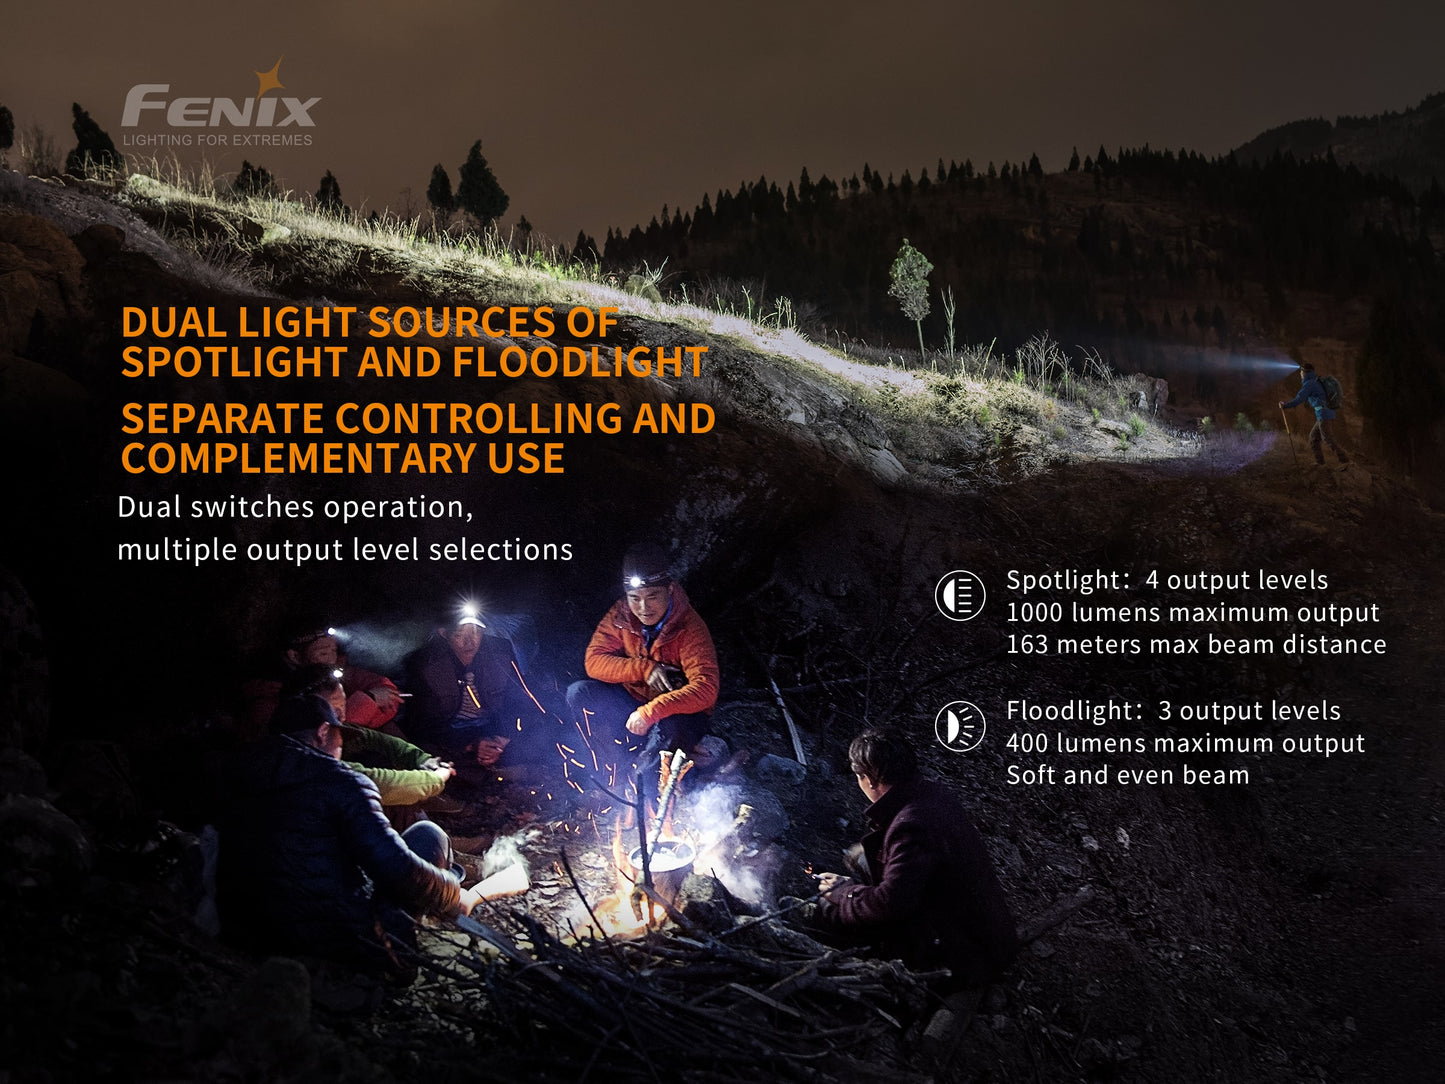 FENIX HM65R-T Rechargeable Headlamp 1500 Lumens